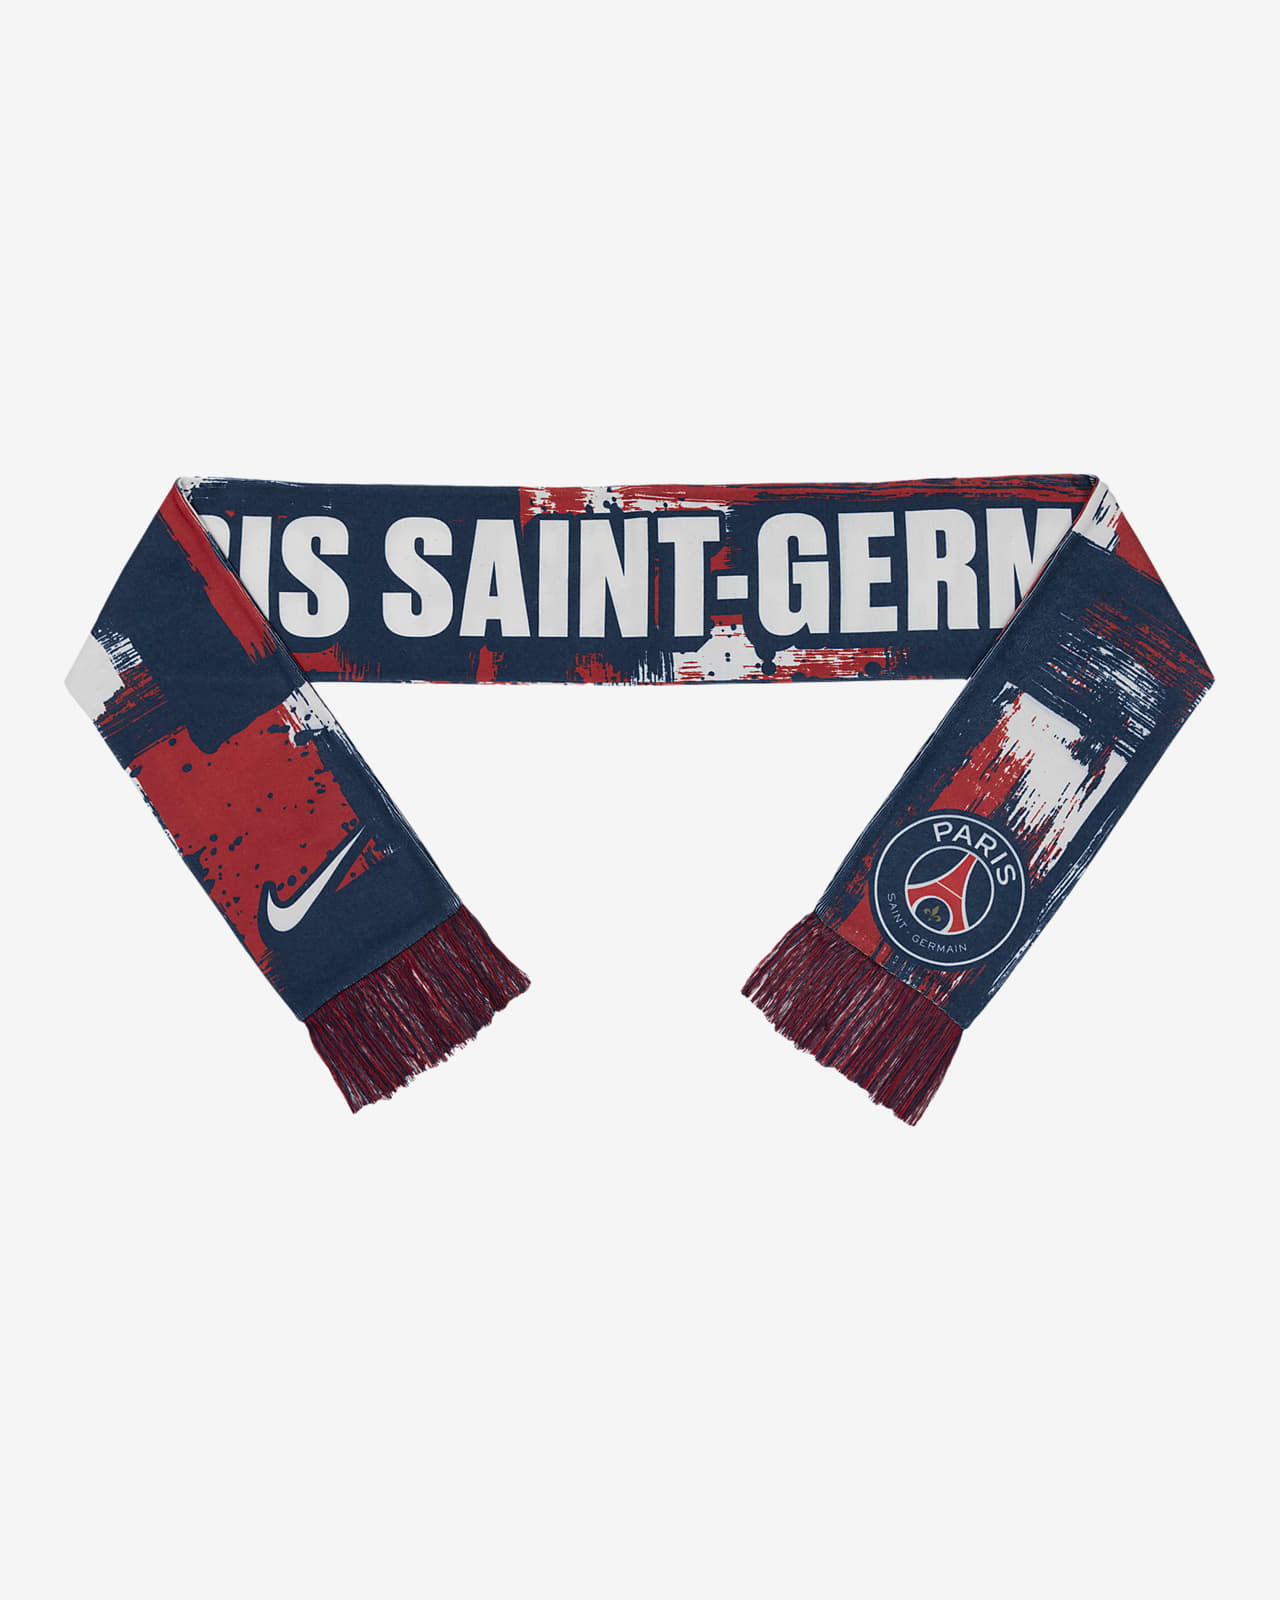 Paris Saint-Germain Nike Soccer Scarf